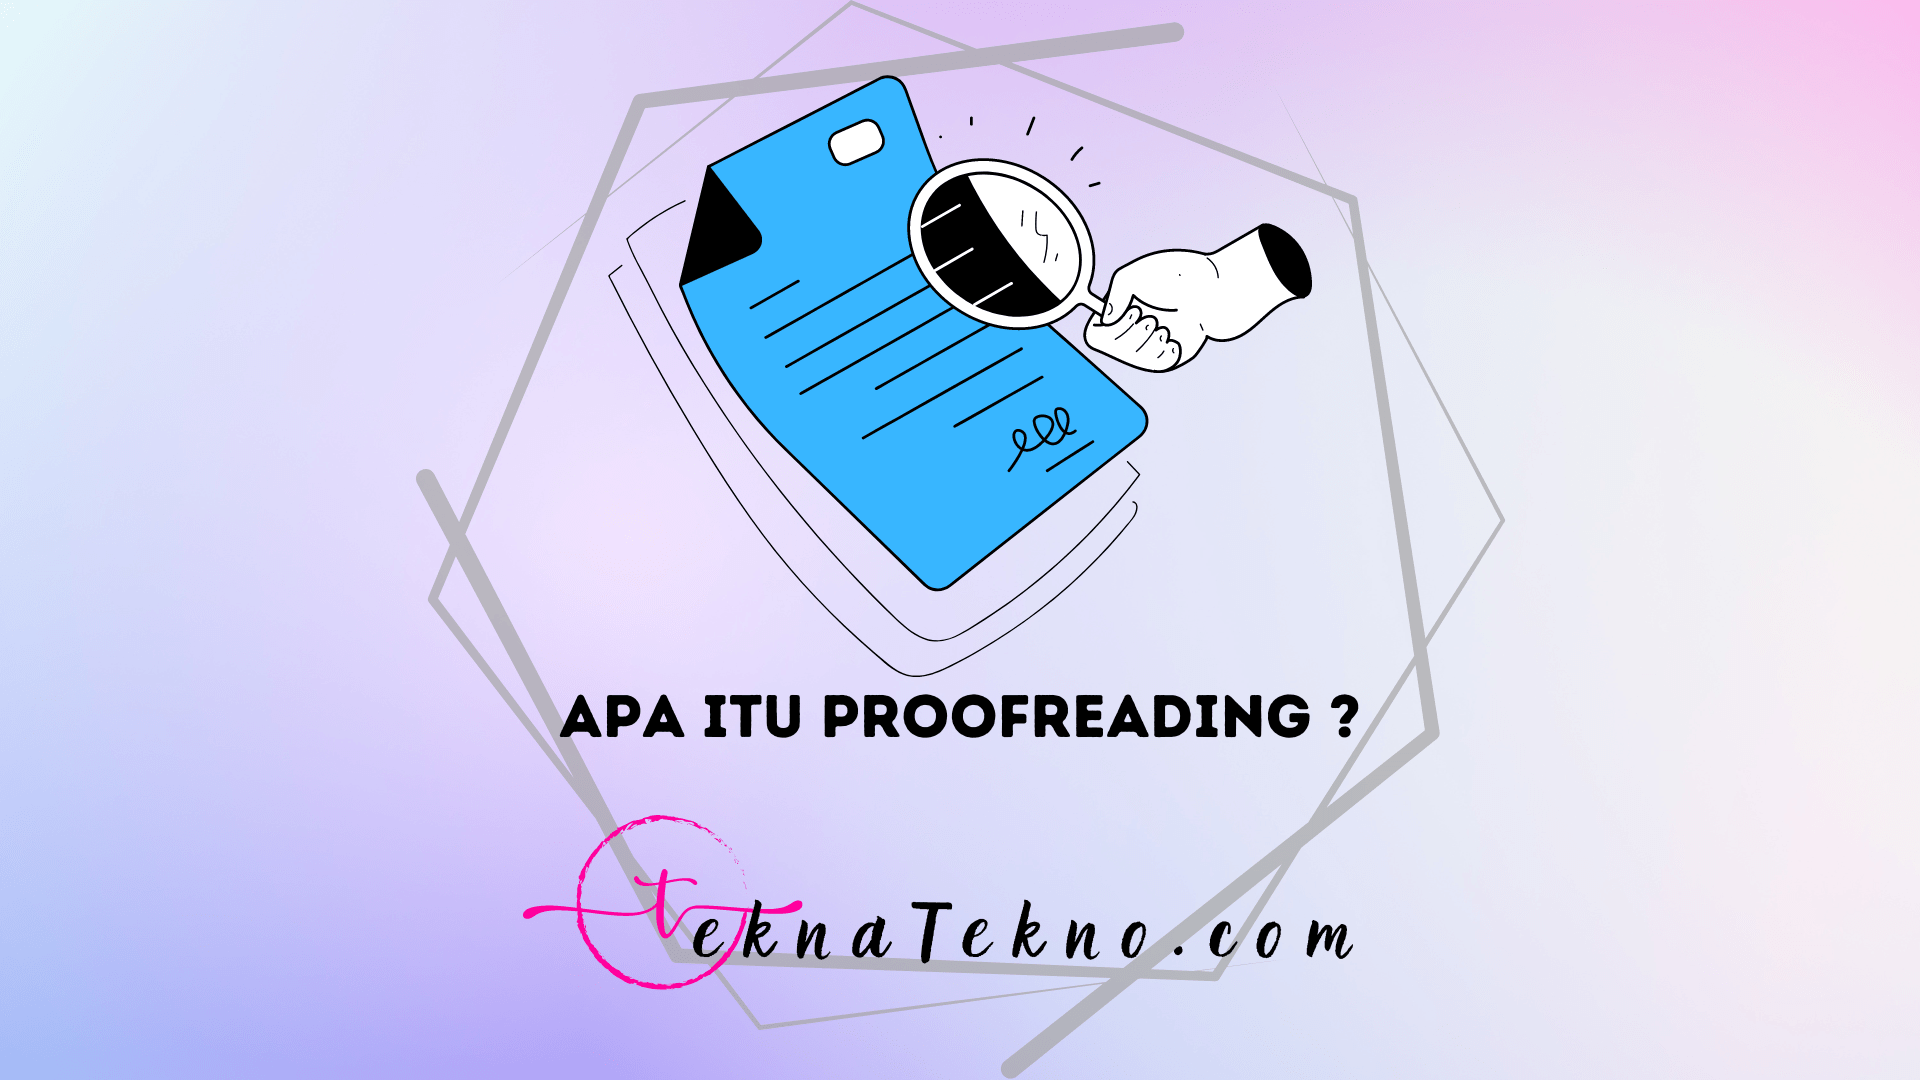 Proofreading Adalah: Meningkatkan Kualitas Tulisan dengan Perhatian Terperinci